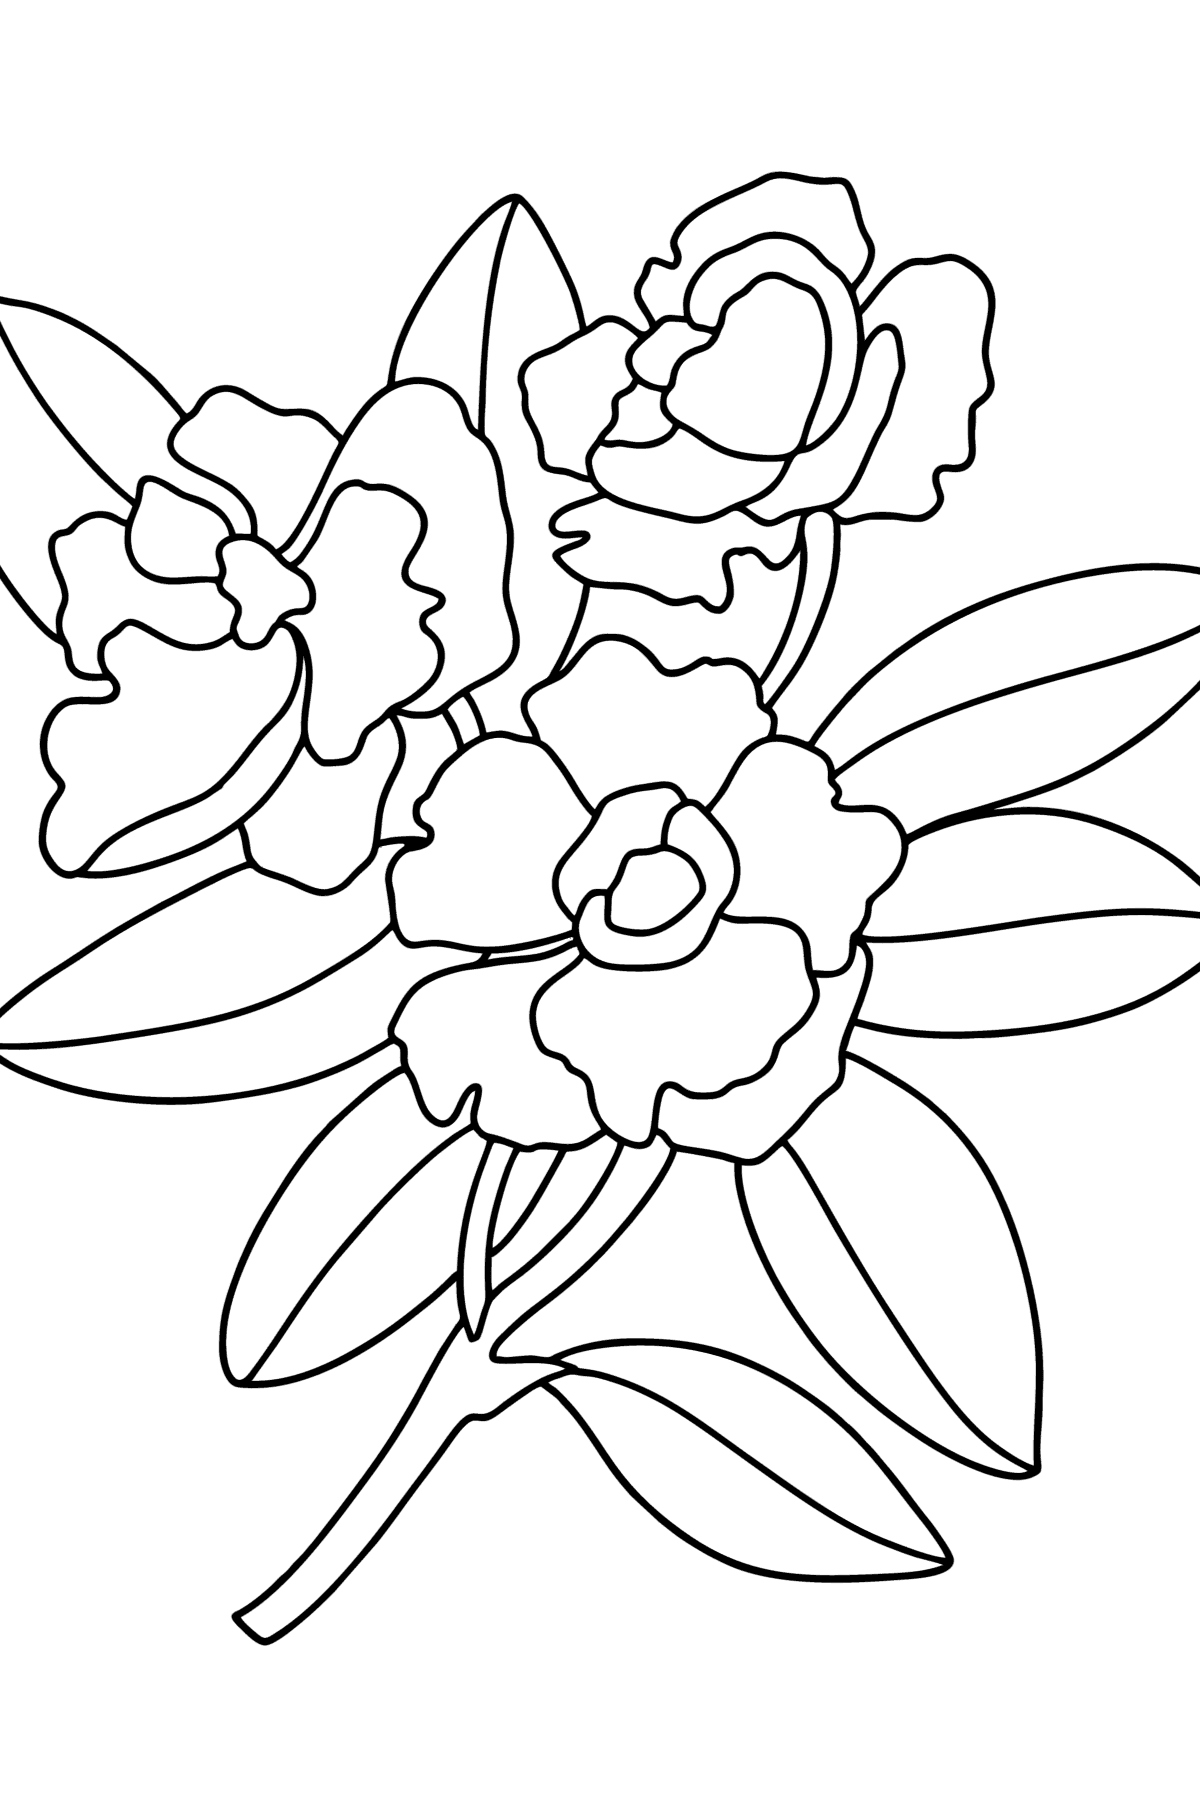 Desen de colorat Gardenie - Desene de colorat pentru copii